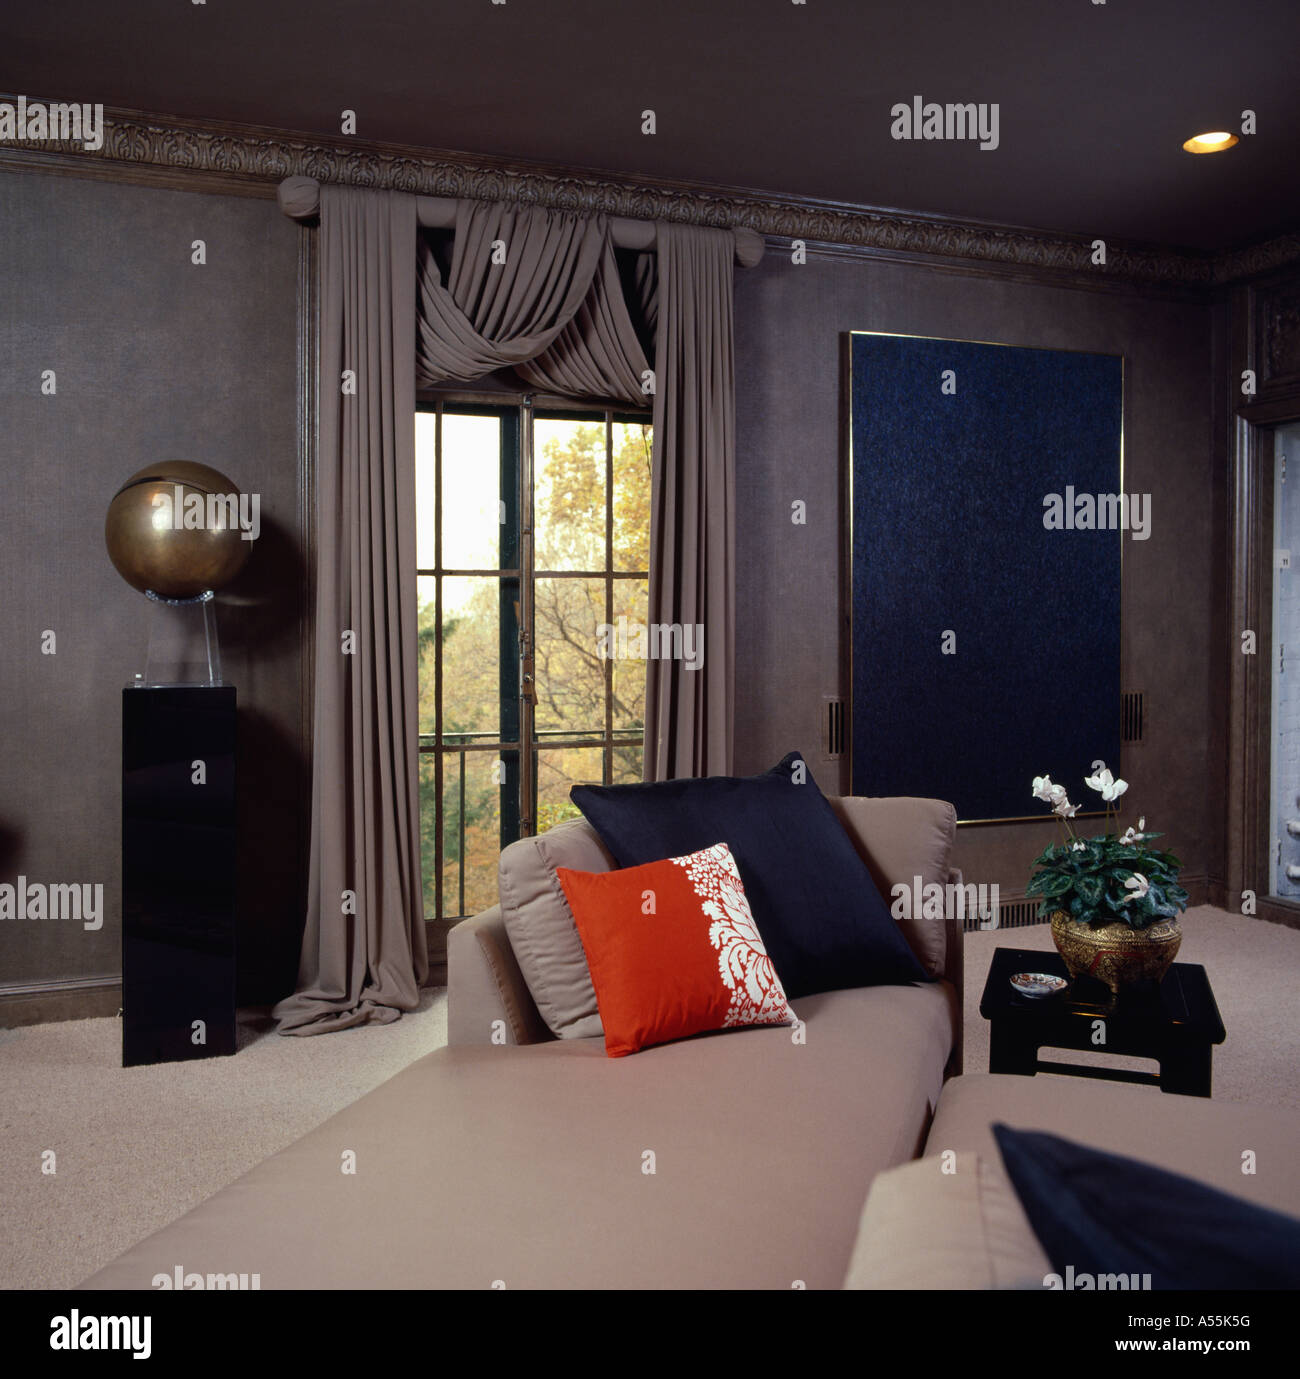 Graue achtziger Gartenhaus mit passenden grauen Sofa mit bunten Kissen und  graue Gardinen Stockfotografie - Alamy